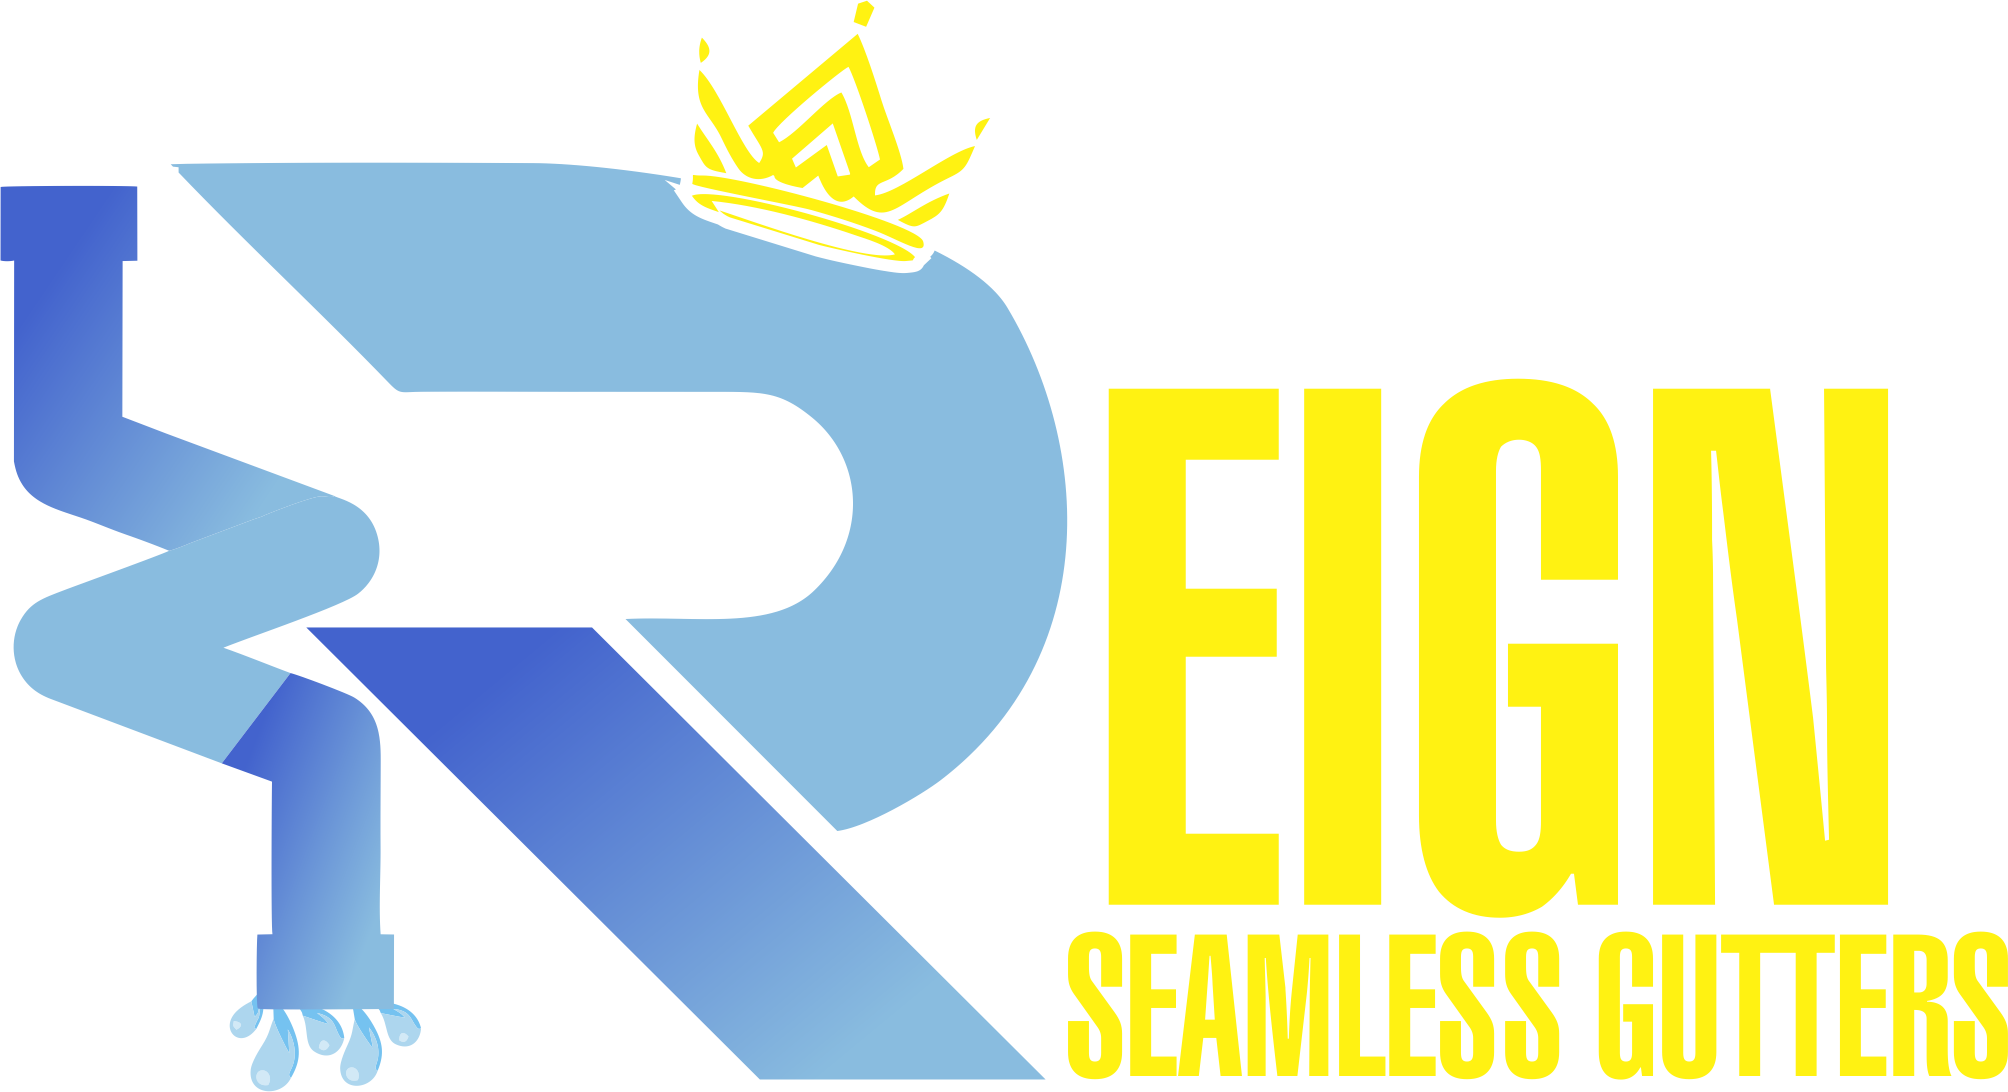 Reigns Seamless Gutters Logo